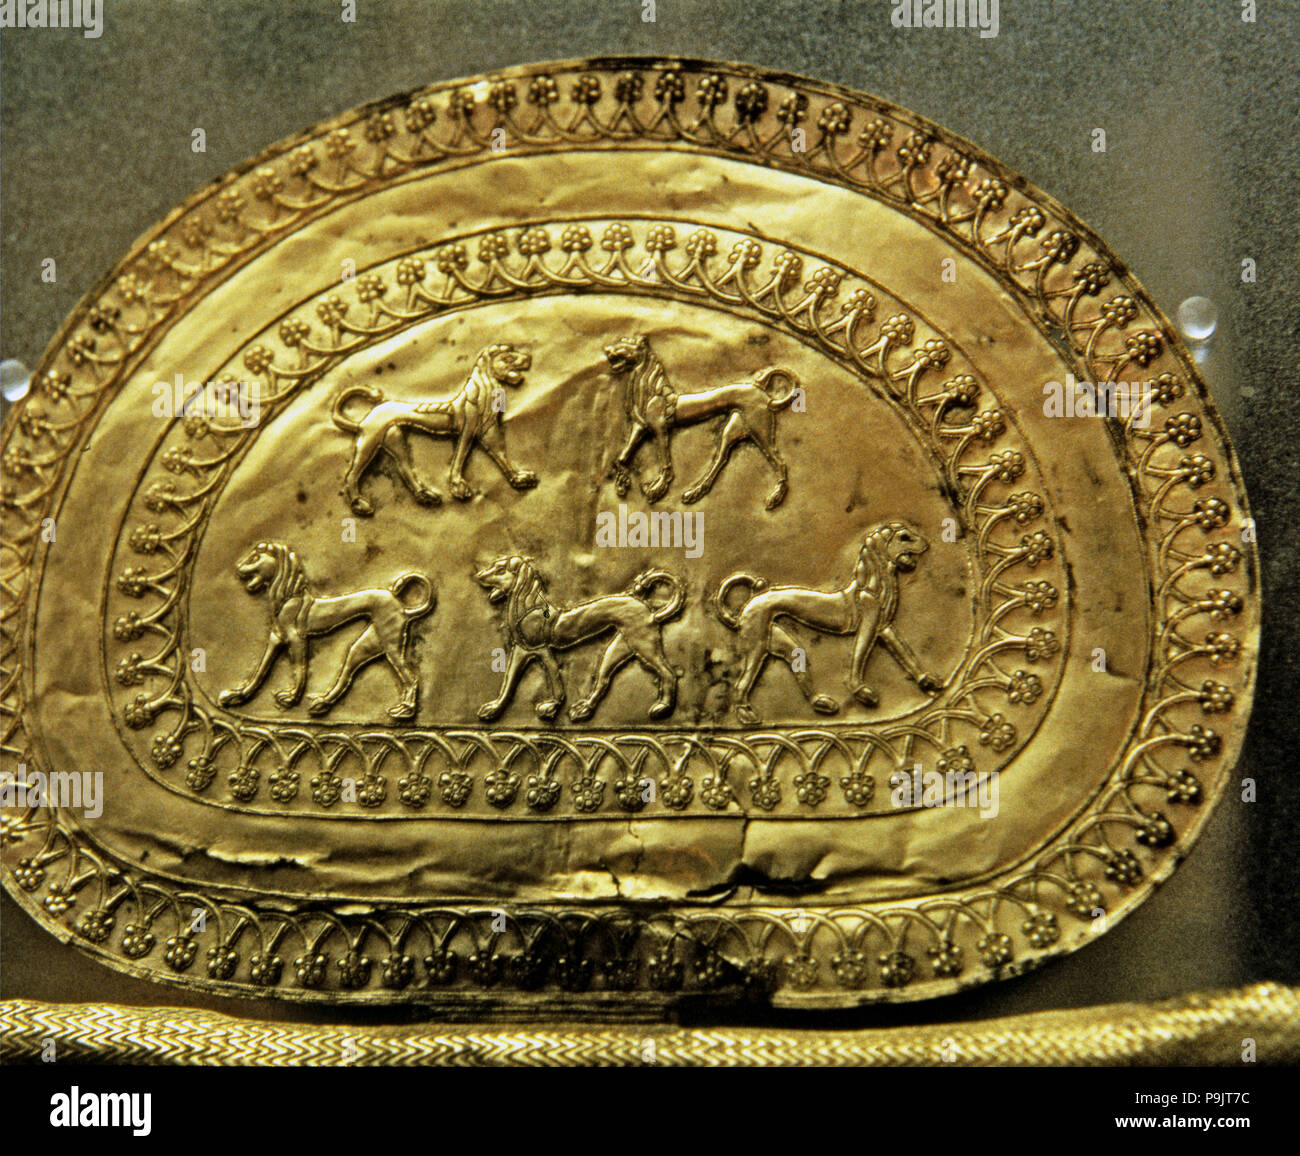 Poitrine étrusque avec feuilles d'or, scène avec plusieurs lions. Banque D'Images